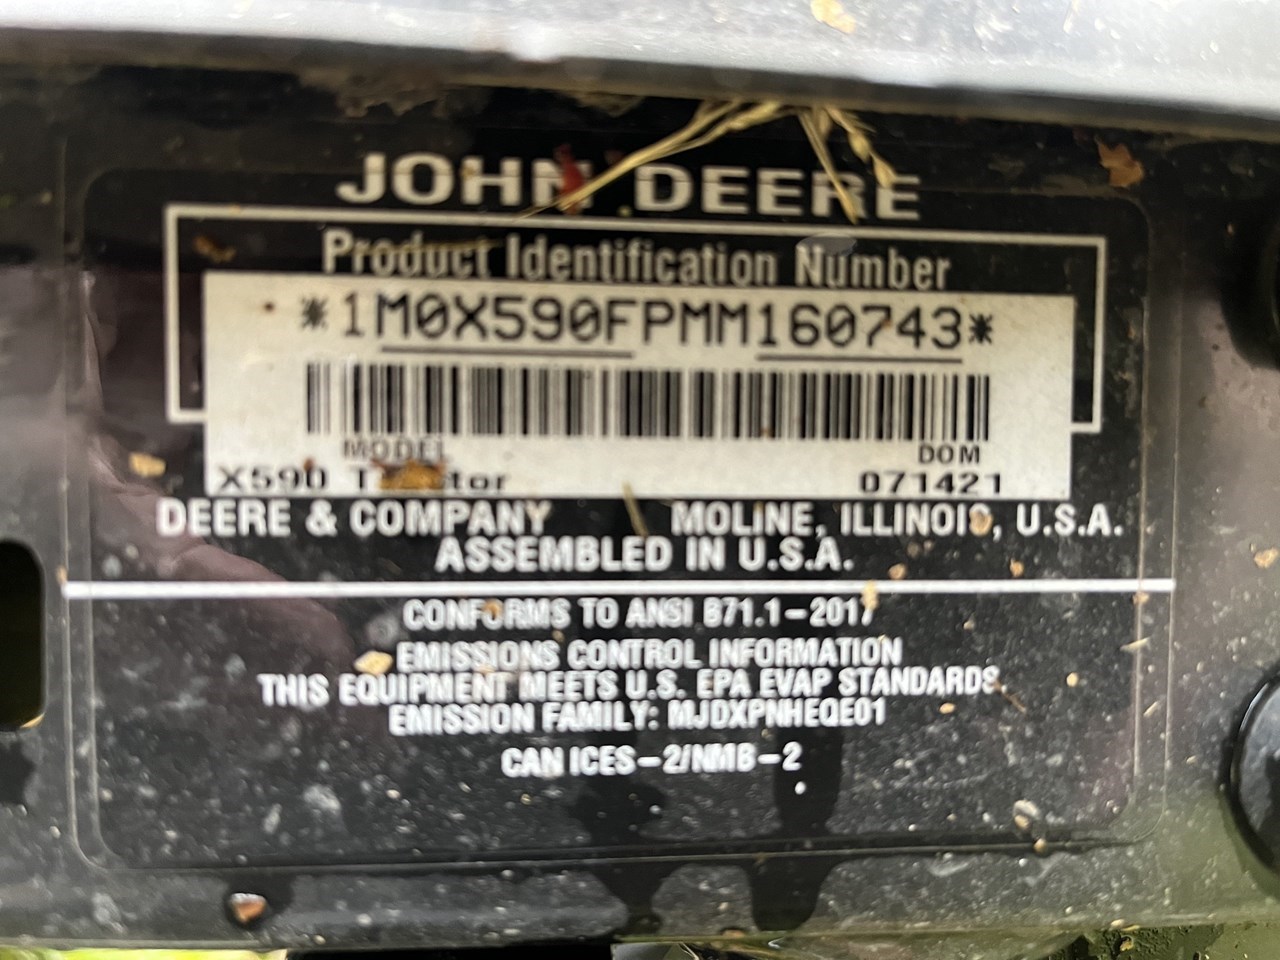 2021 John Deere X590 Lawn Mower For Sale